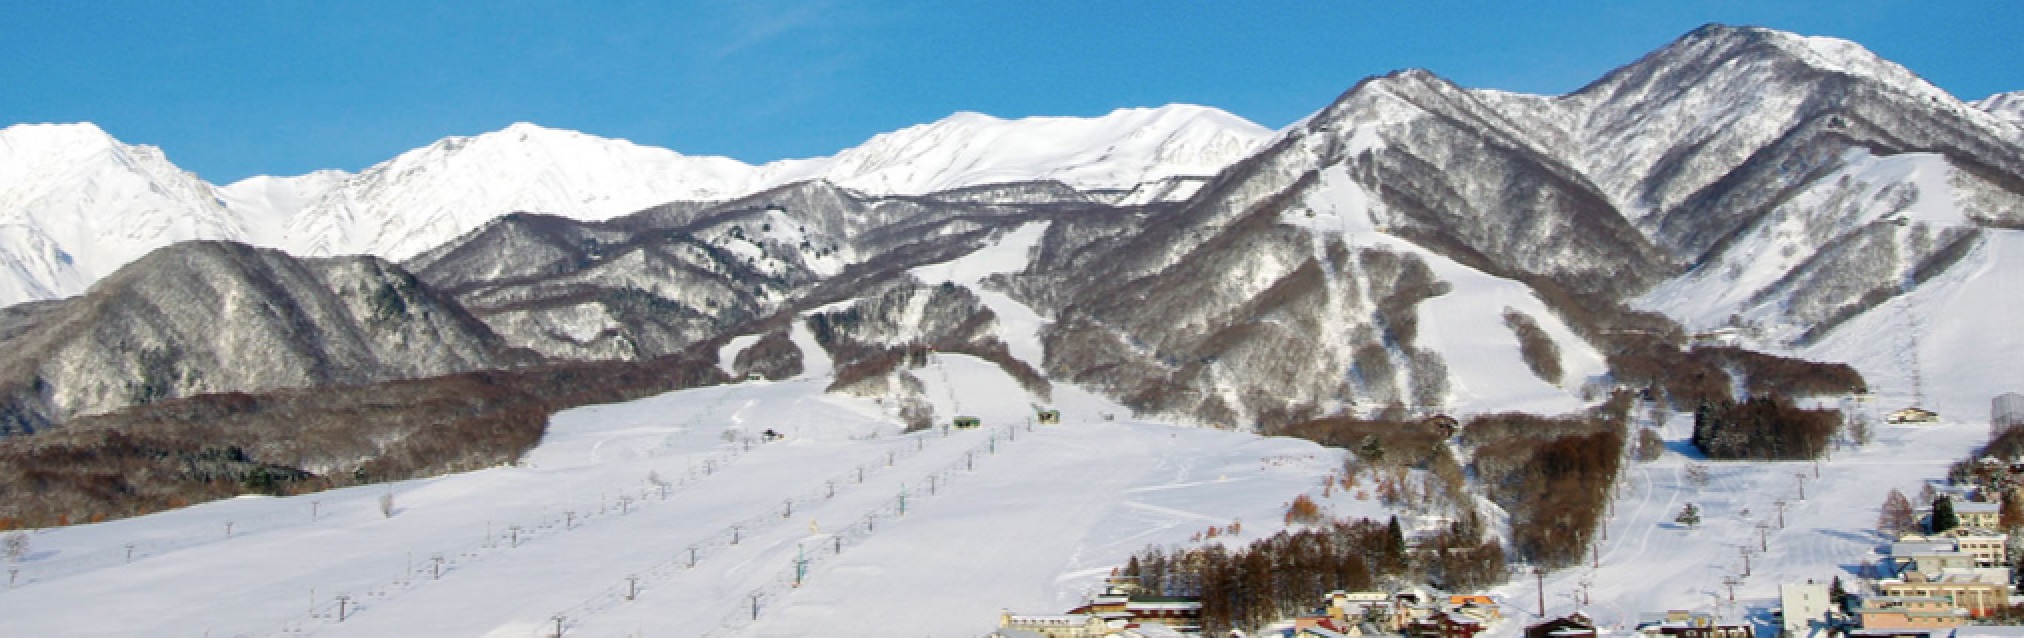 長野の栂池高原スキー場、2020～2021冬季シーズンの営業開始。ベース